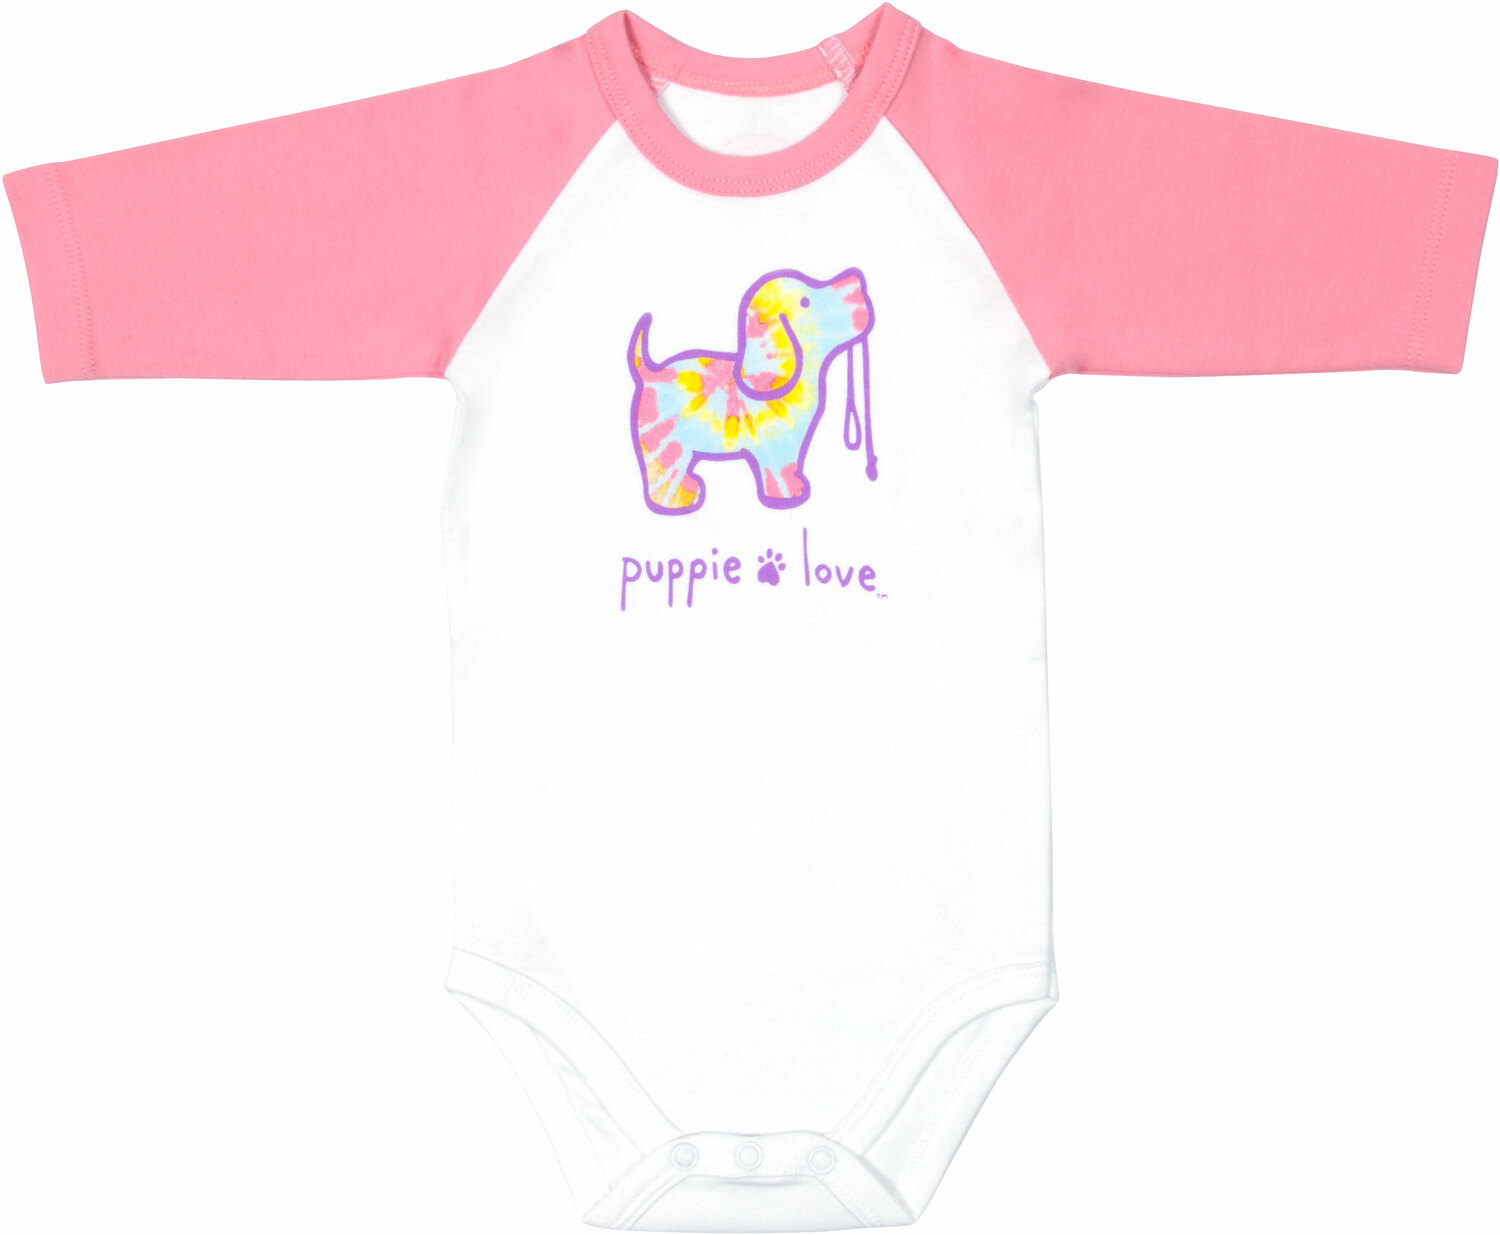 Tie Dye by Puppie Love - Tie Dye - 6-12 Months
3/4 Length Pink Sleeve Onesie